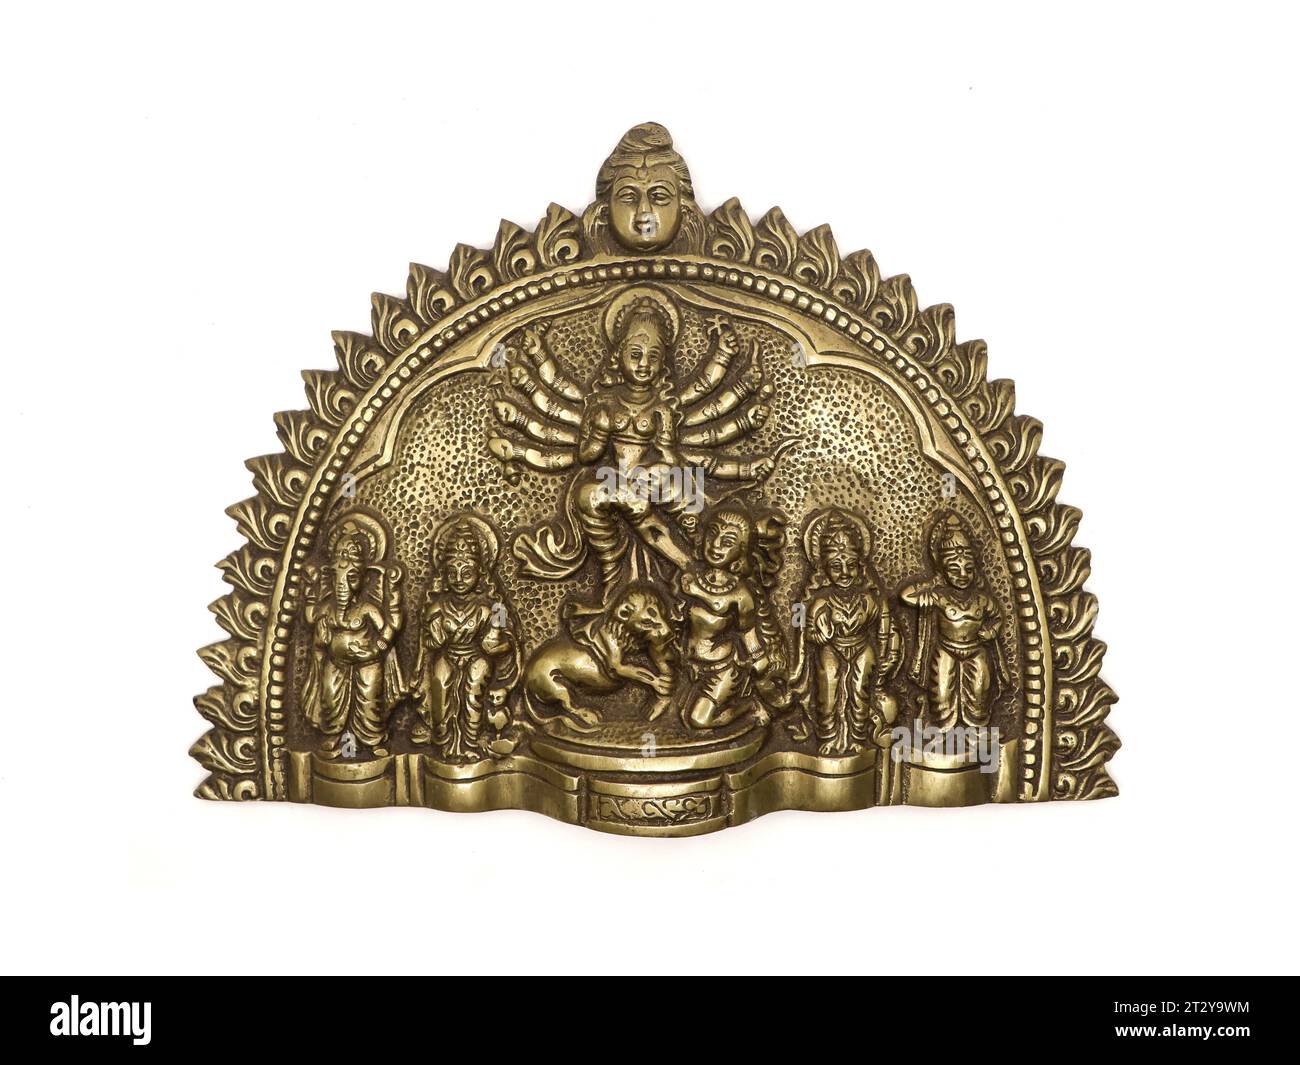 Messing-Handwerkskunst-Statue der Göttin durga der hinduistischen Religion, die Dämon Mahishasura tötet, wurde während des durga pooja Festivals isoliert verwendet Stockfoto